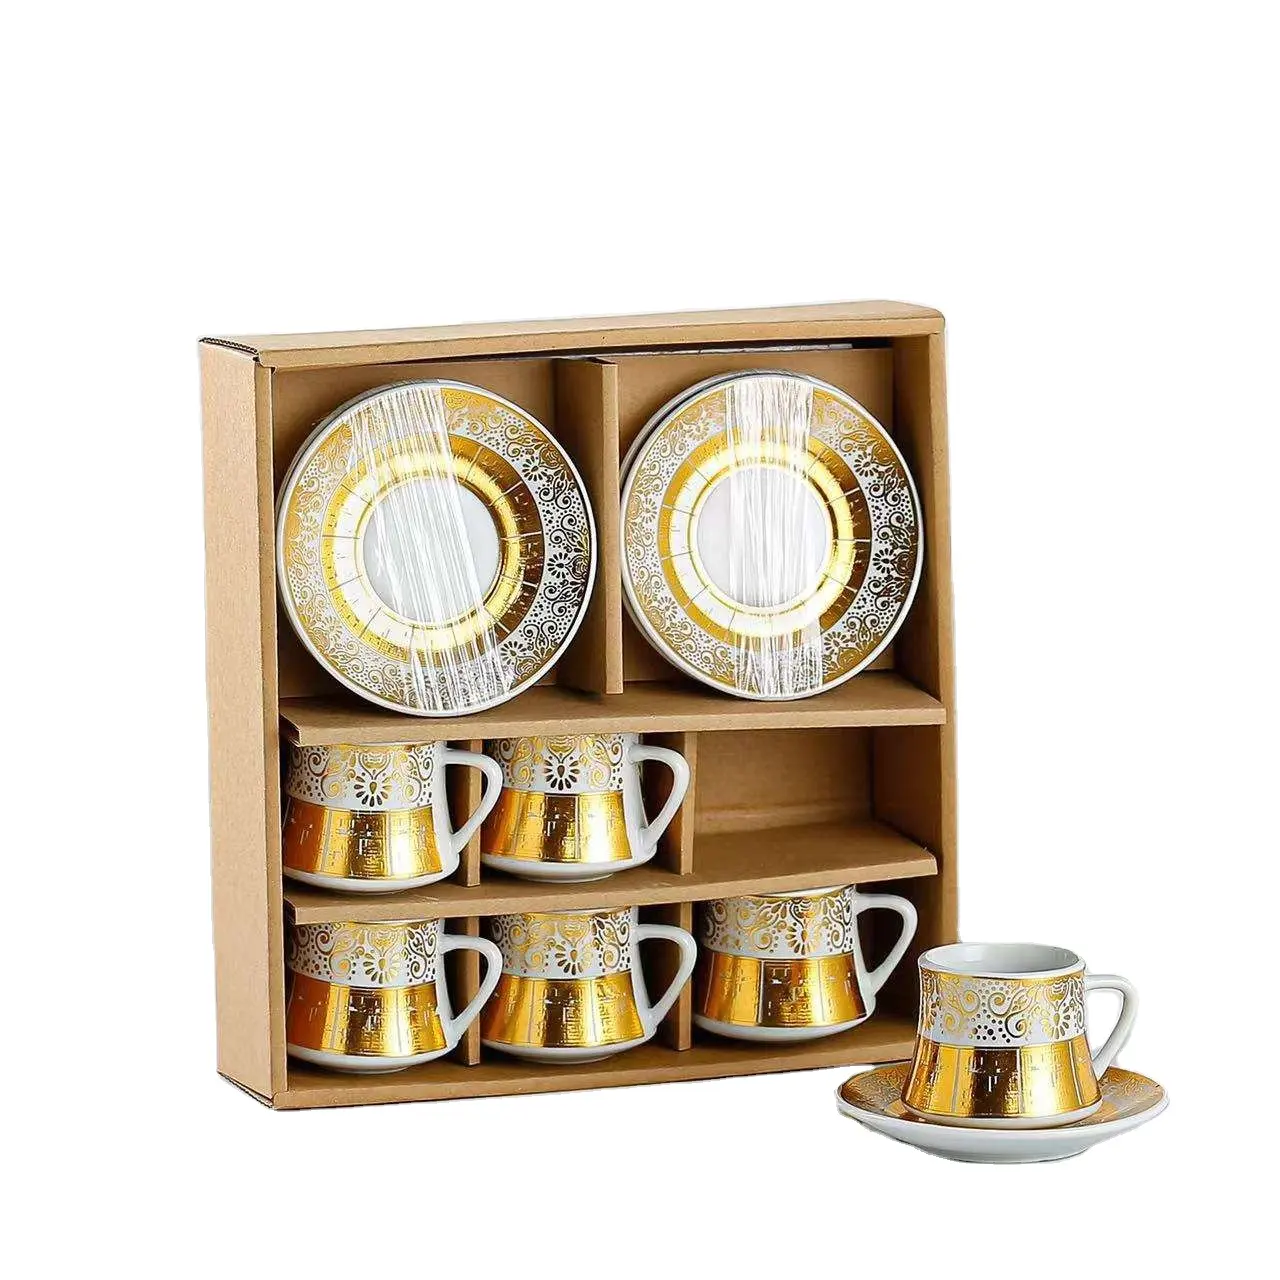 Новый дизайн, набор из 16 предметов эфиопского кофе и чая, Классическая коллекция Rekebot из Африки с элегантными чашками